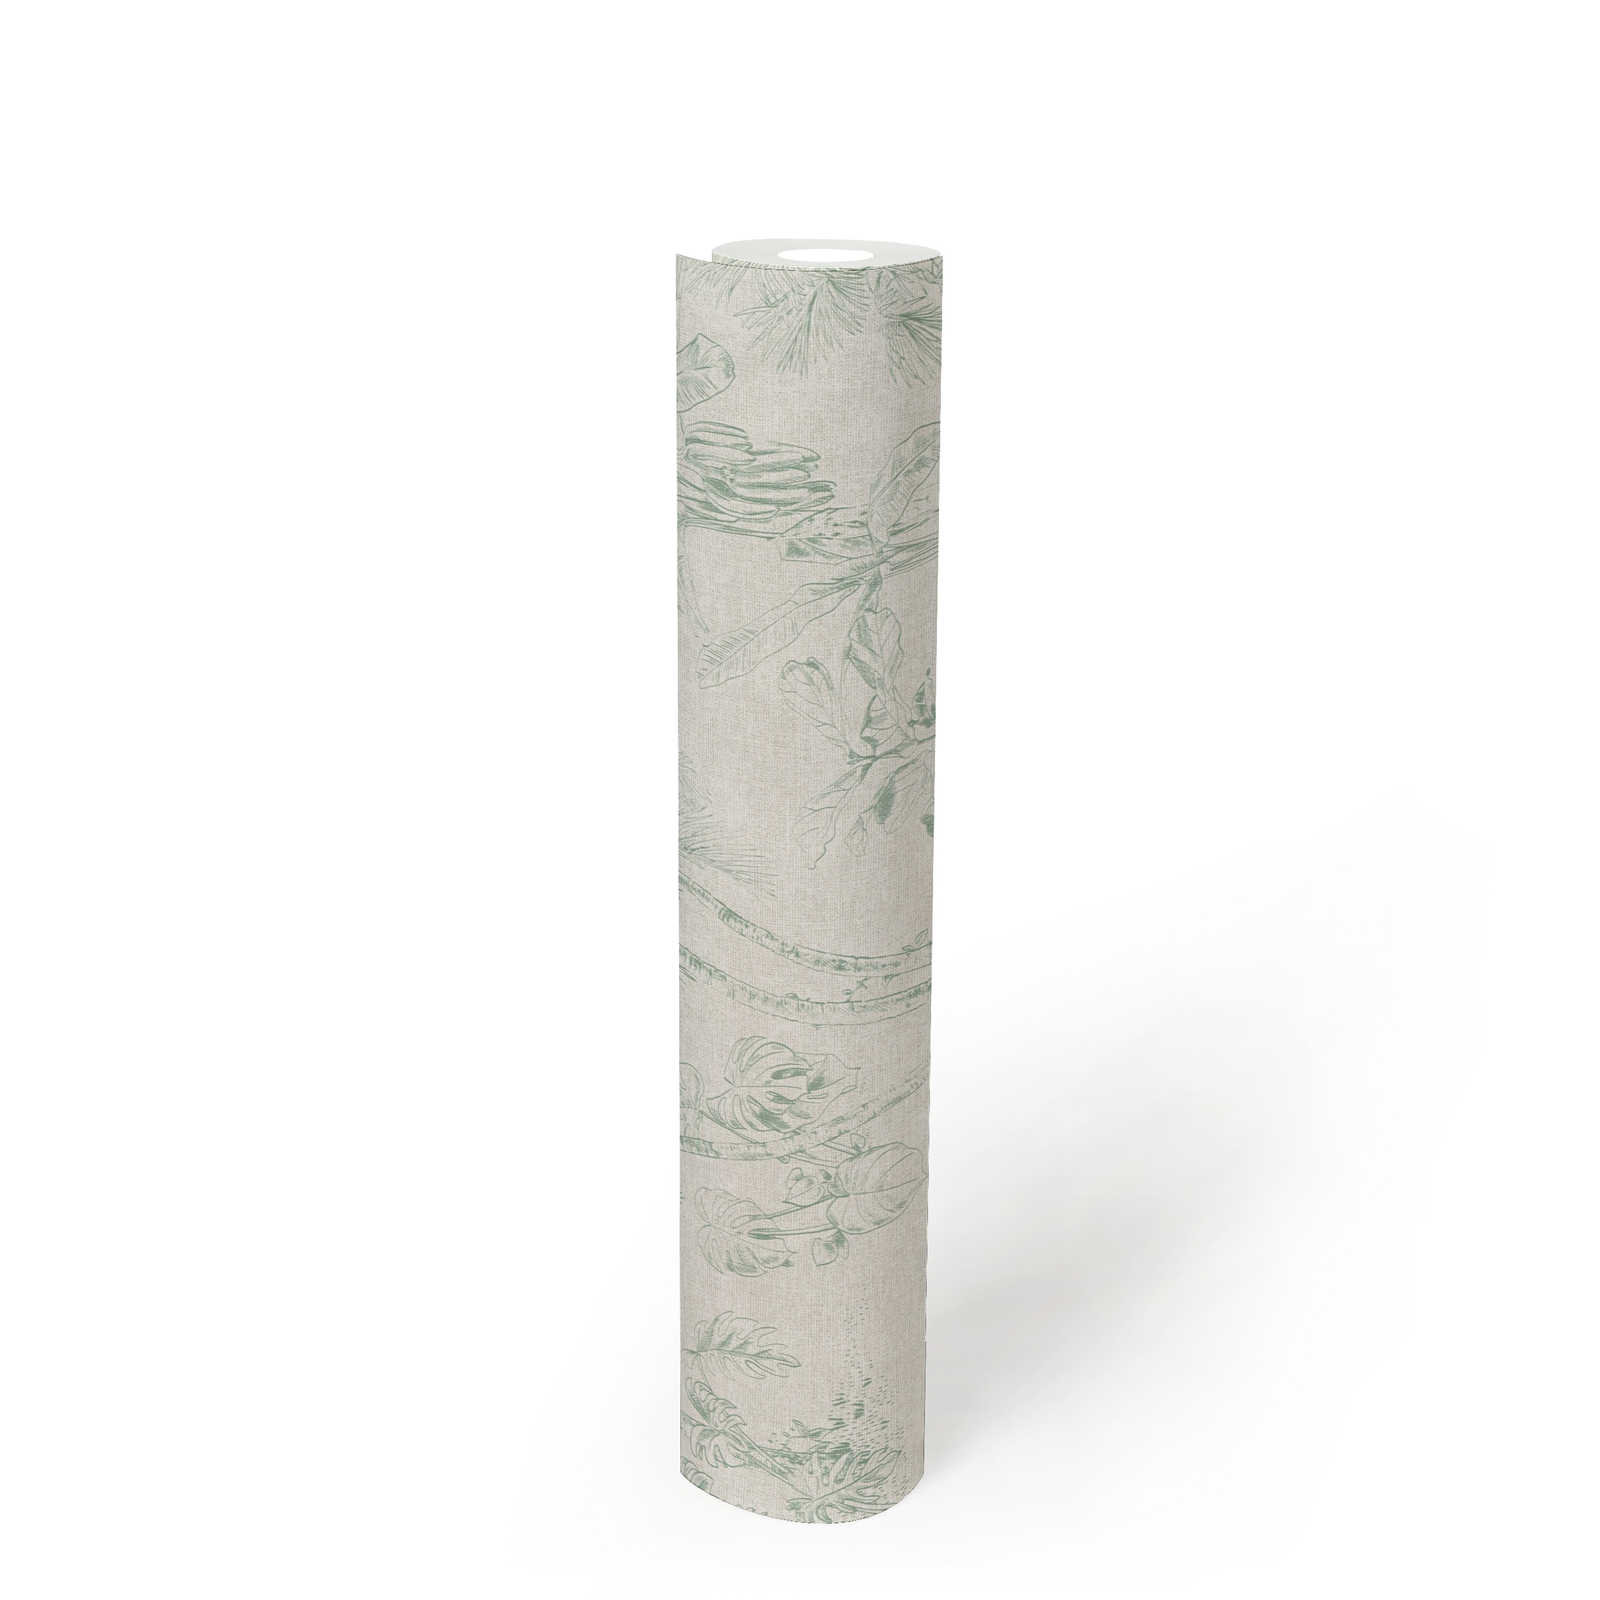             Papier peint aspect lin Design jungle avec palmiers - gris, vert
        